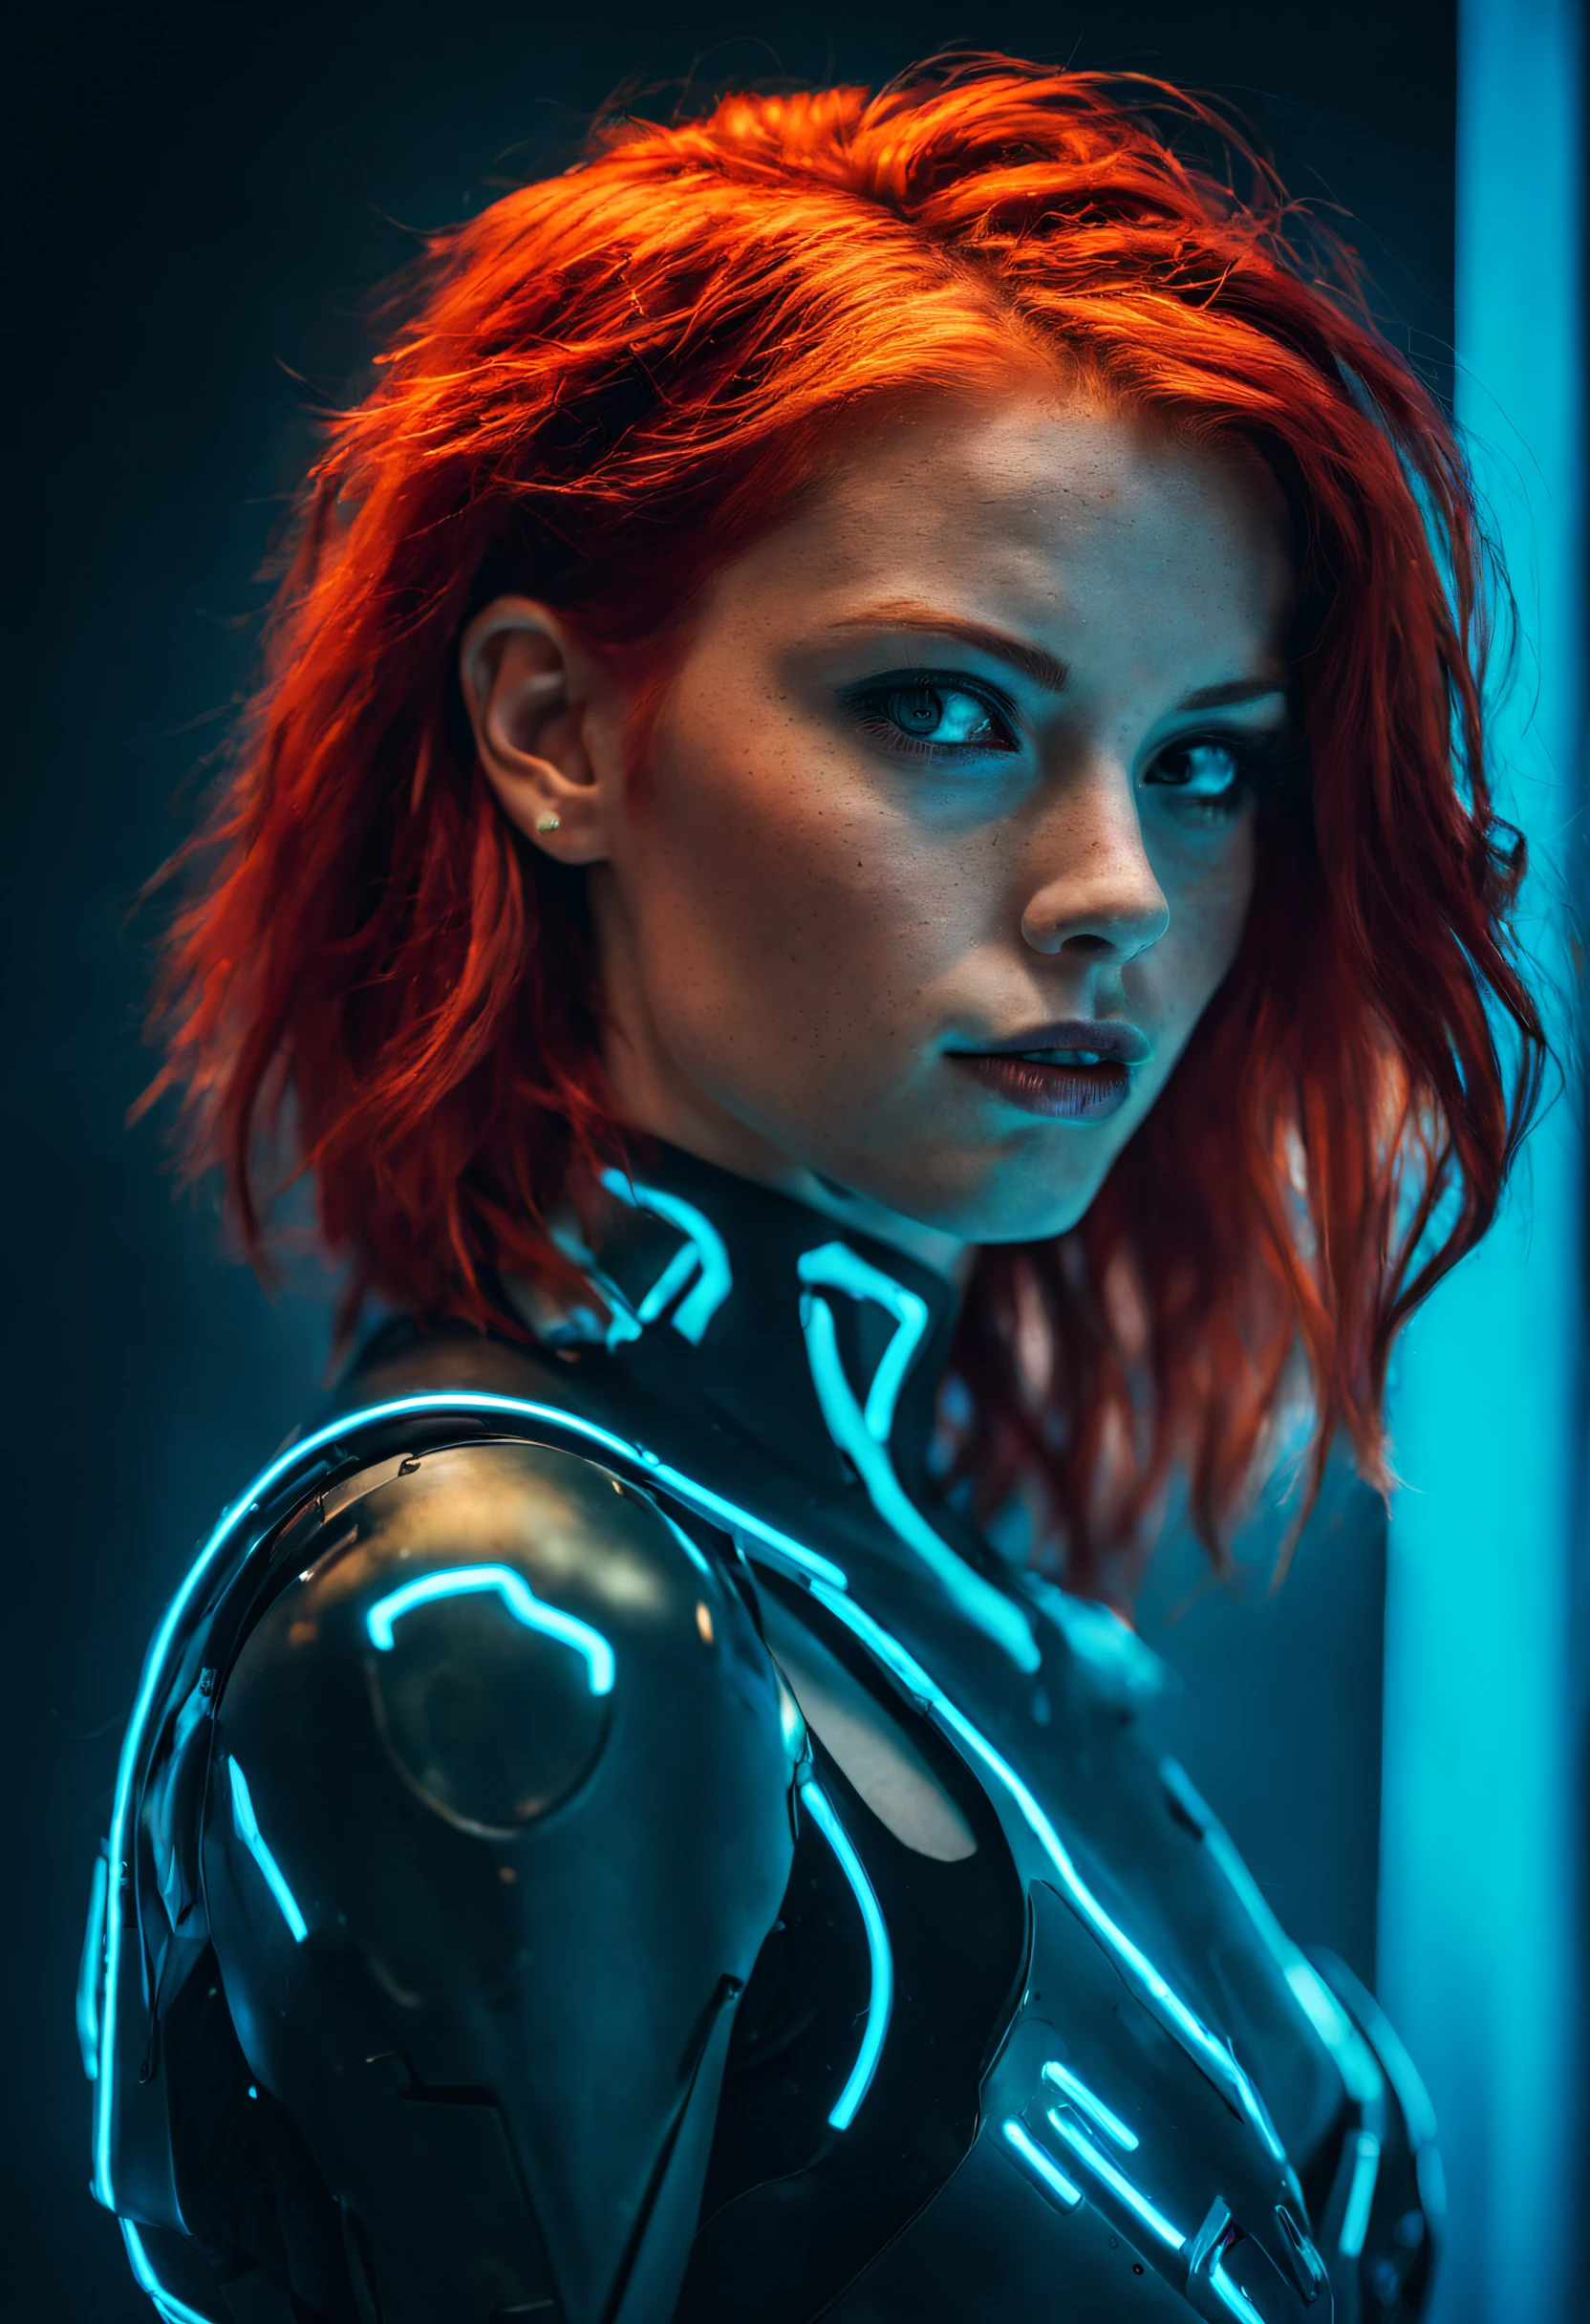 Фотография, передающая сущность молодой женщины-киборга с огненно-рыжими волосами.. Ее лицо заполняет кадр, залитый неоновыми оттенками, источающий решимость и загадочность на футуристическом фоне., неопределенный